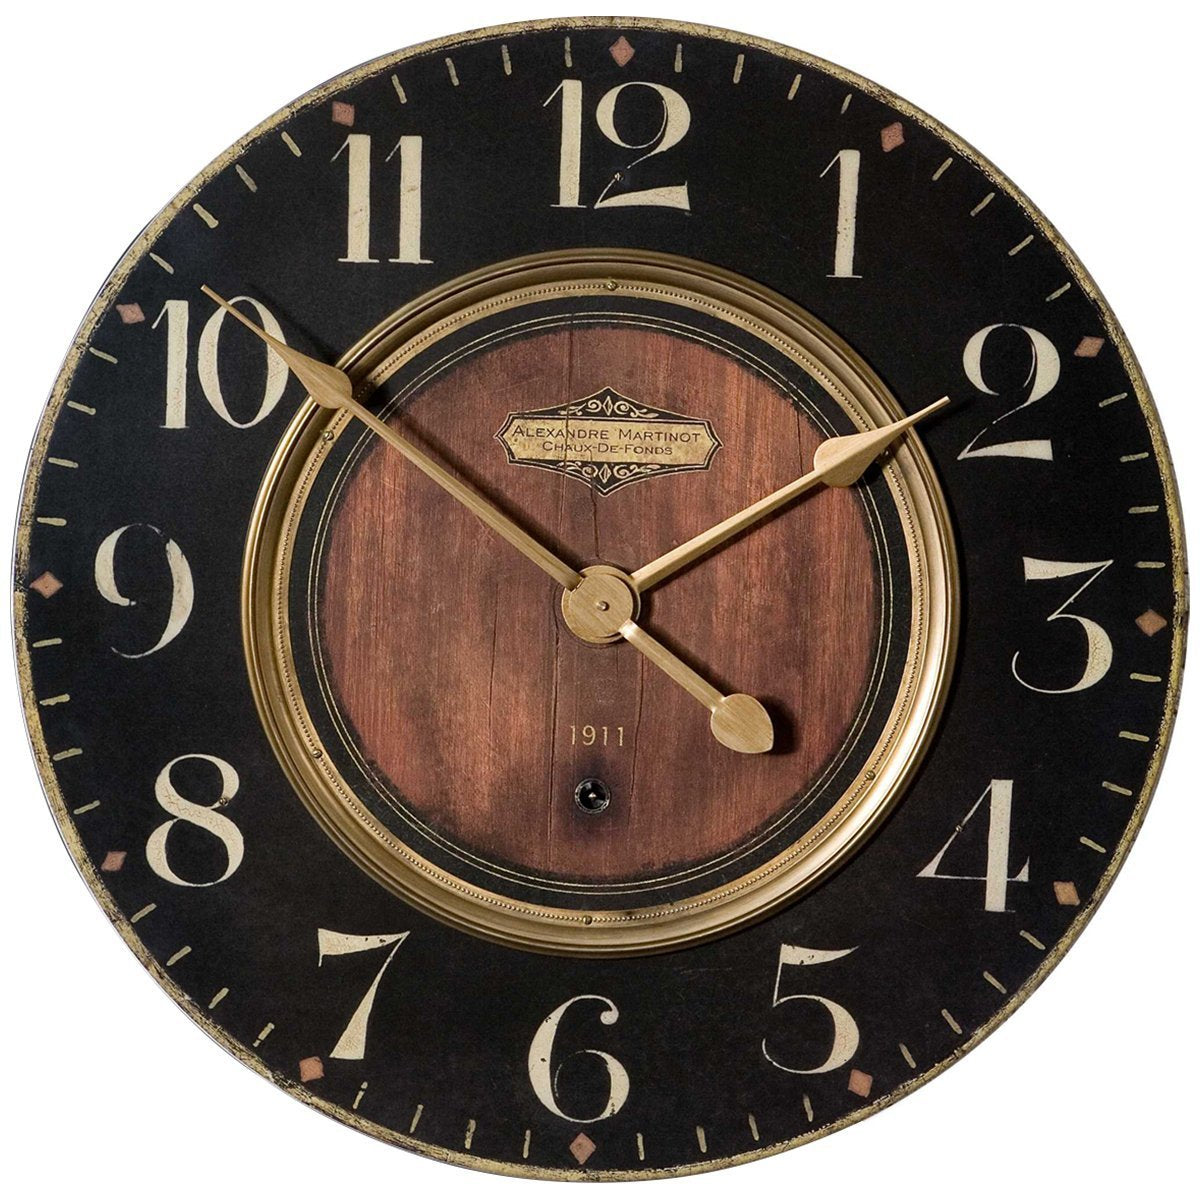 Uttermost Alexandre Martinot 23-Inch Wall Clock